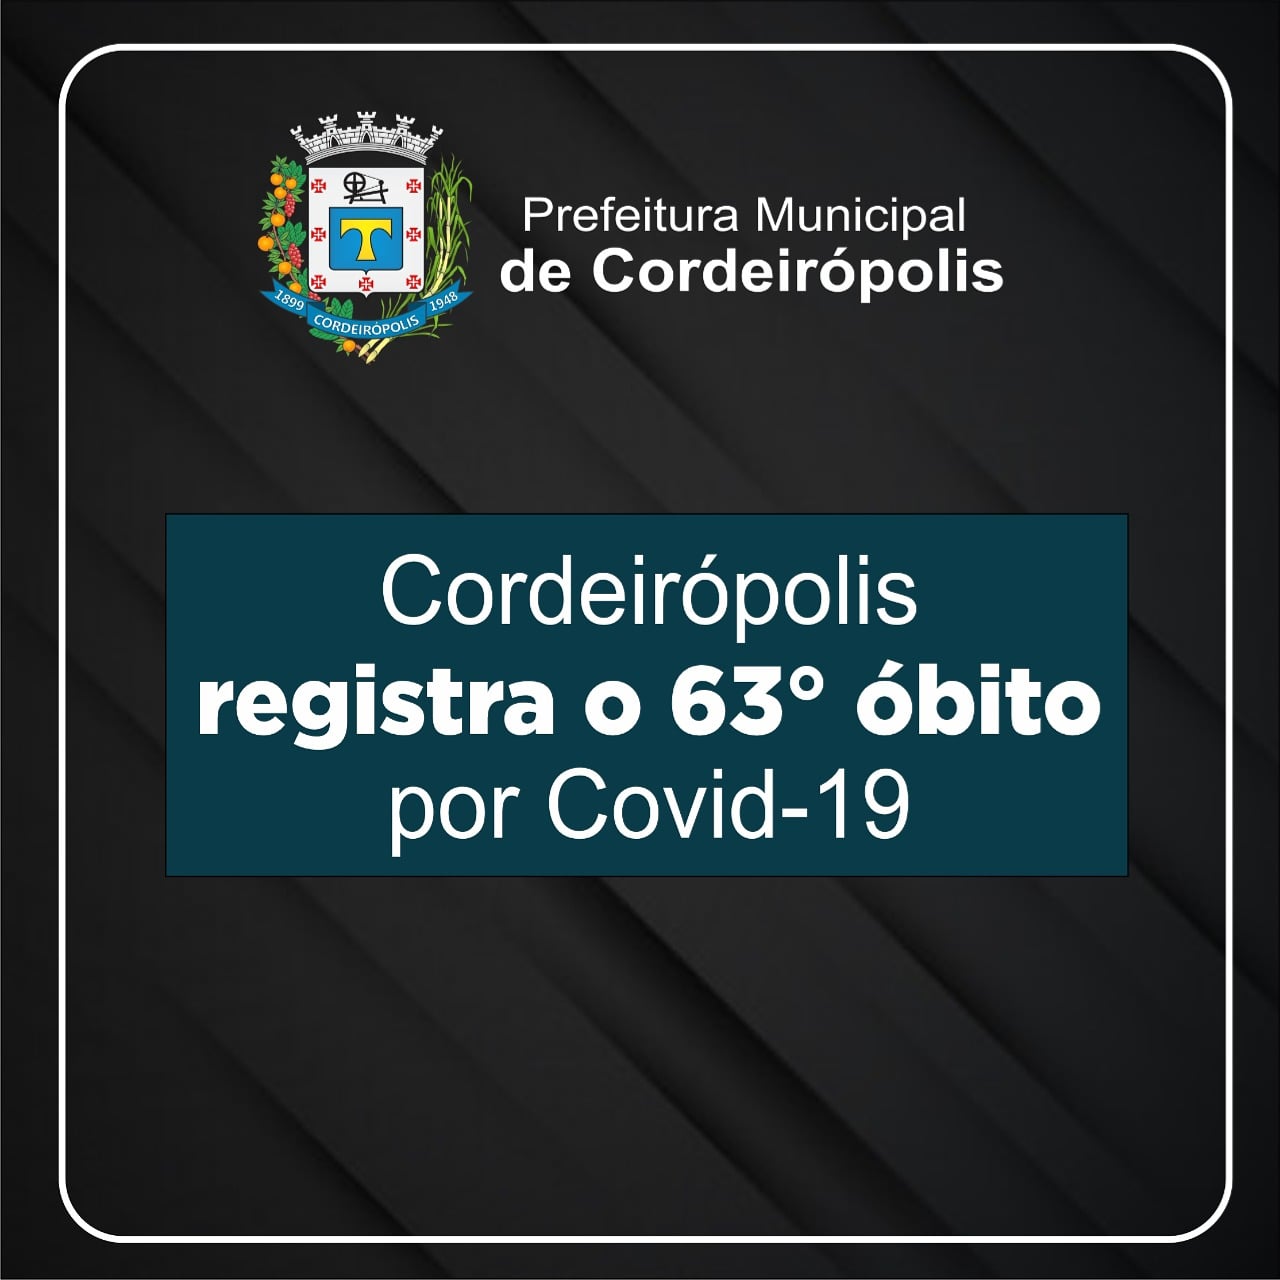 Cordeirópolis registra o 63°obito em decorrência a Covid